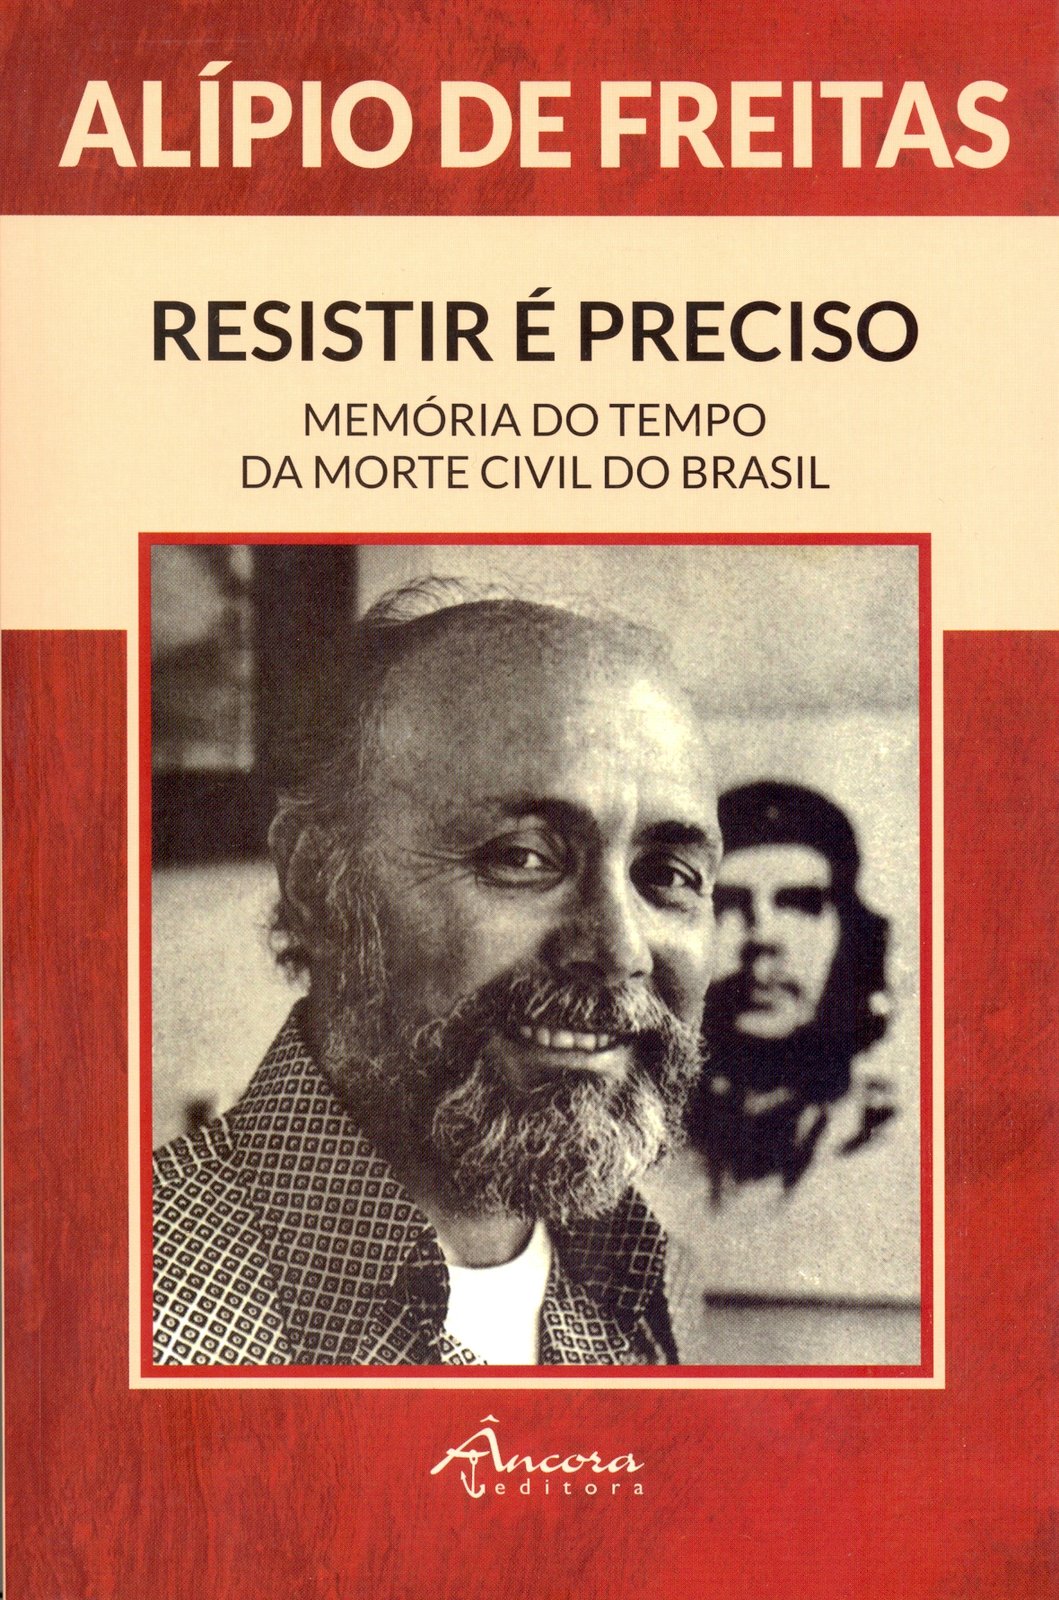 Alípio de Freitas - Resistir é Preciso, Memória do Tempo da Morte Civil no Brasl